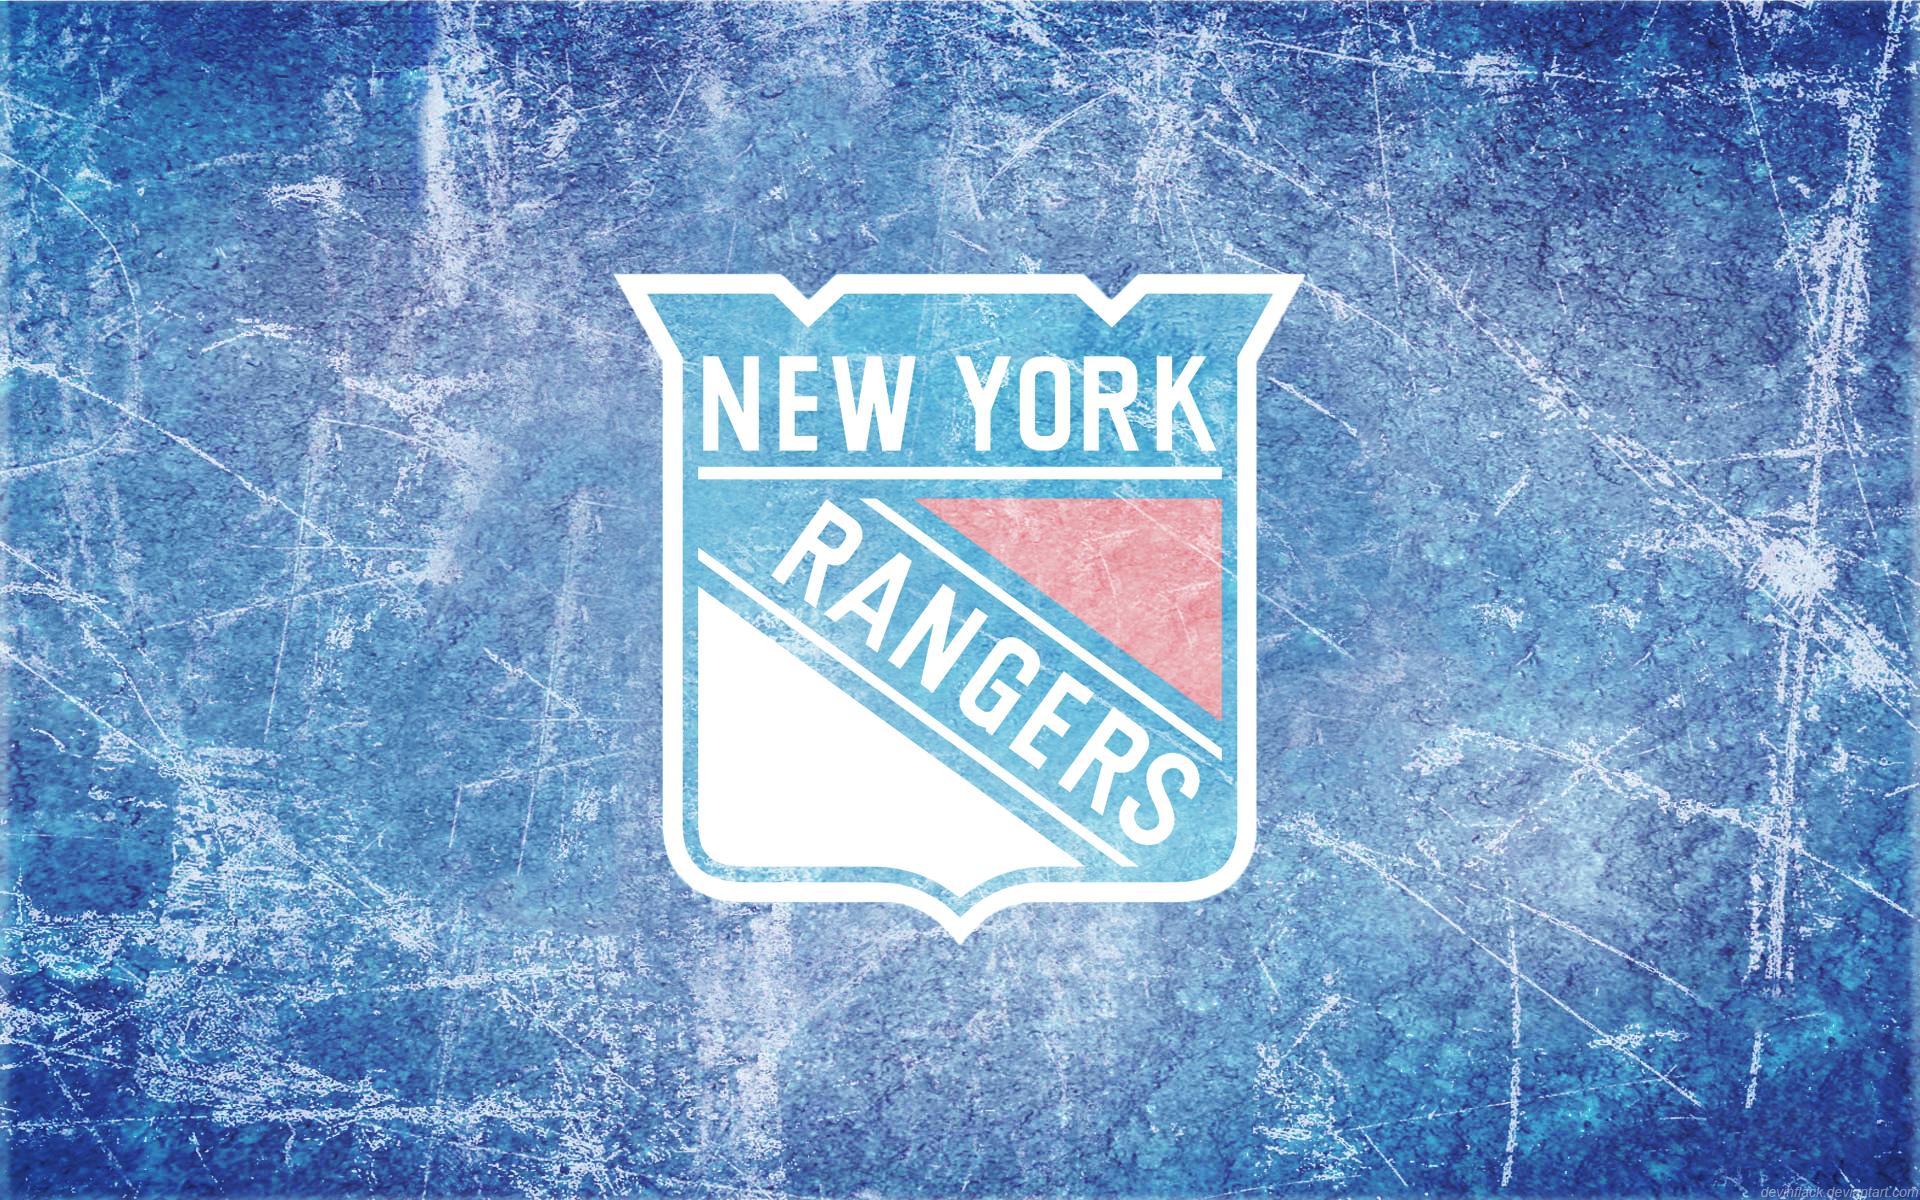 download new york rangers 20